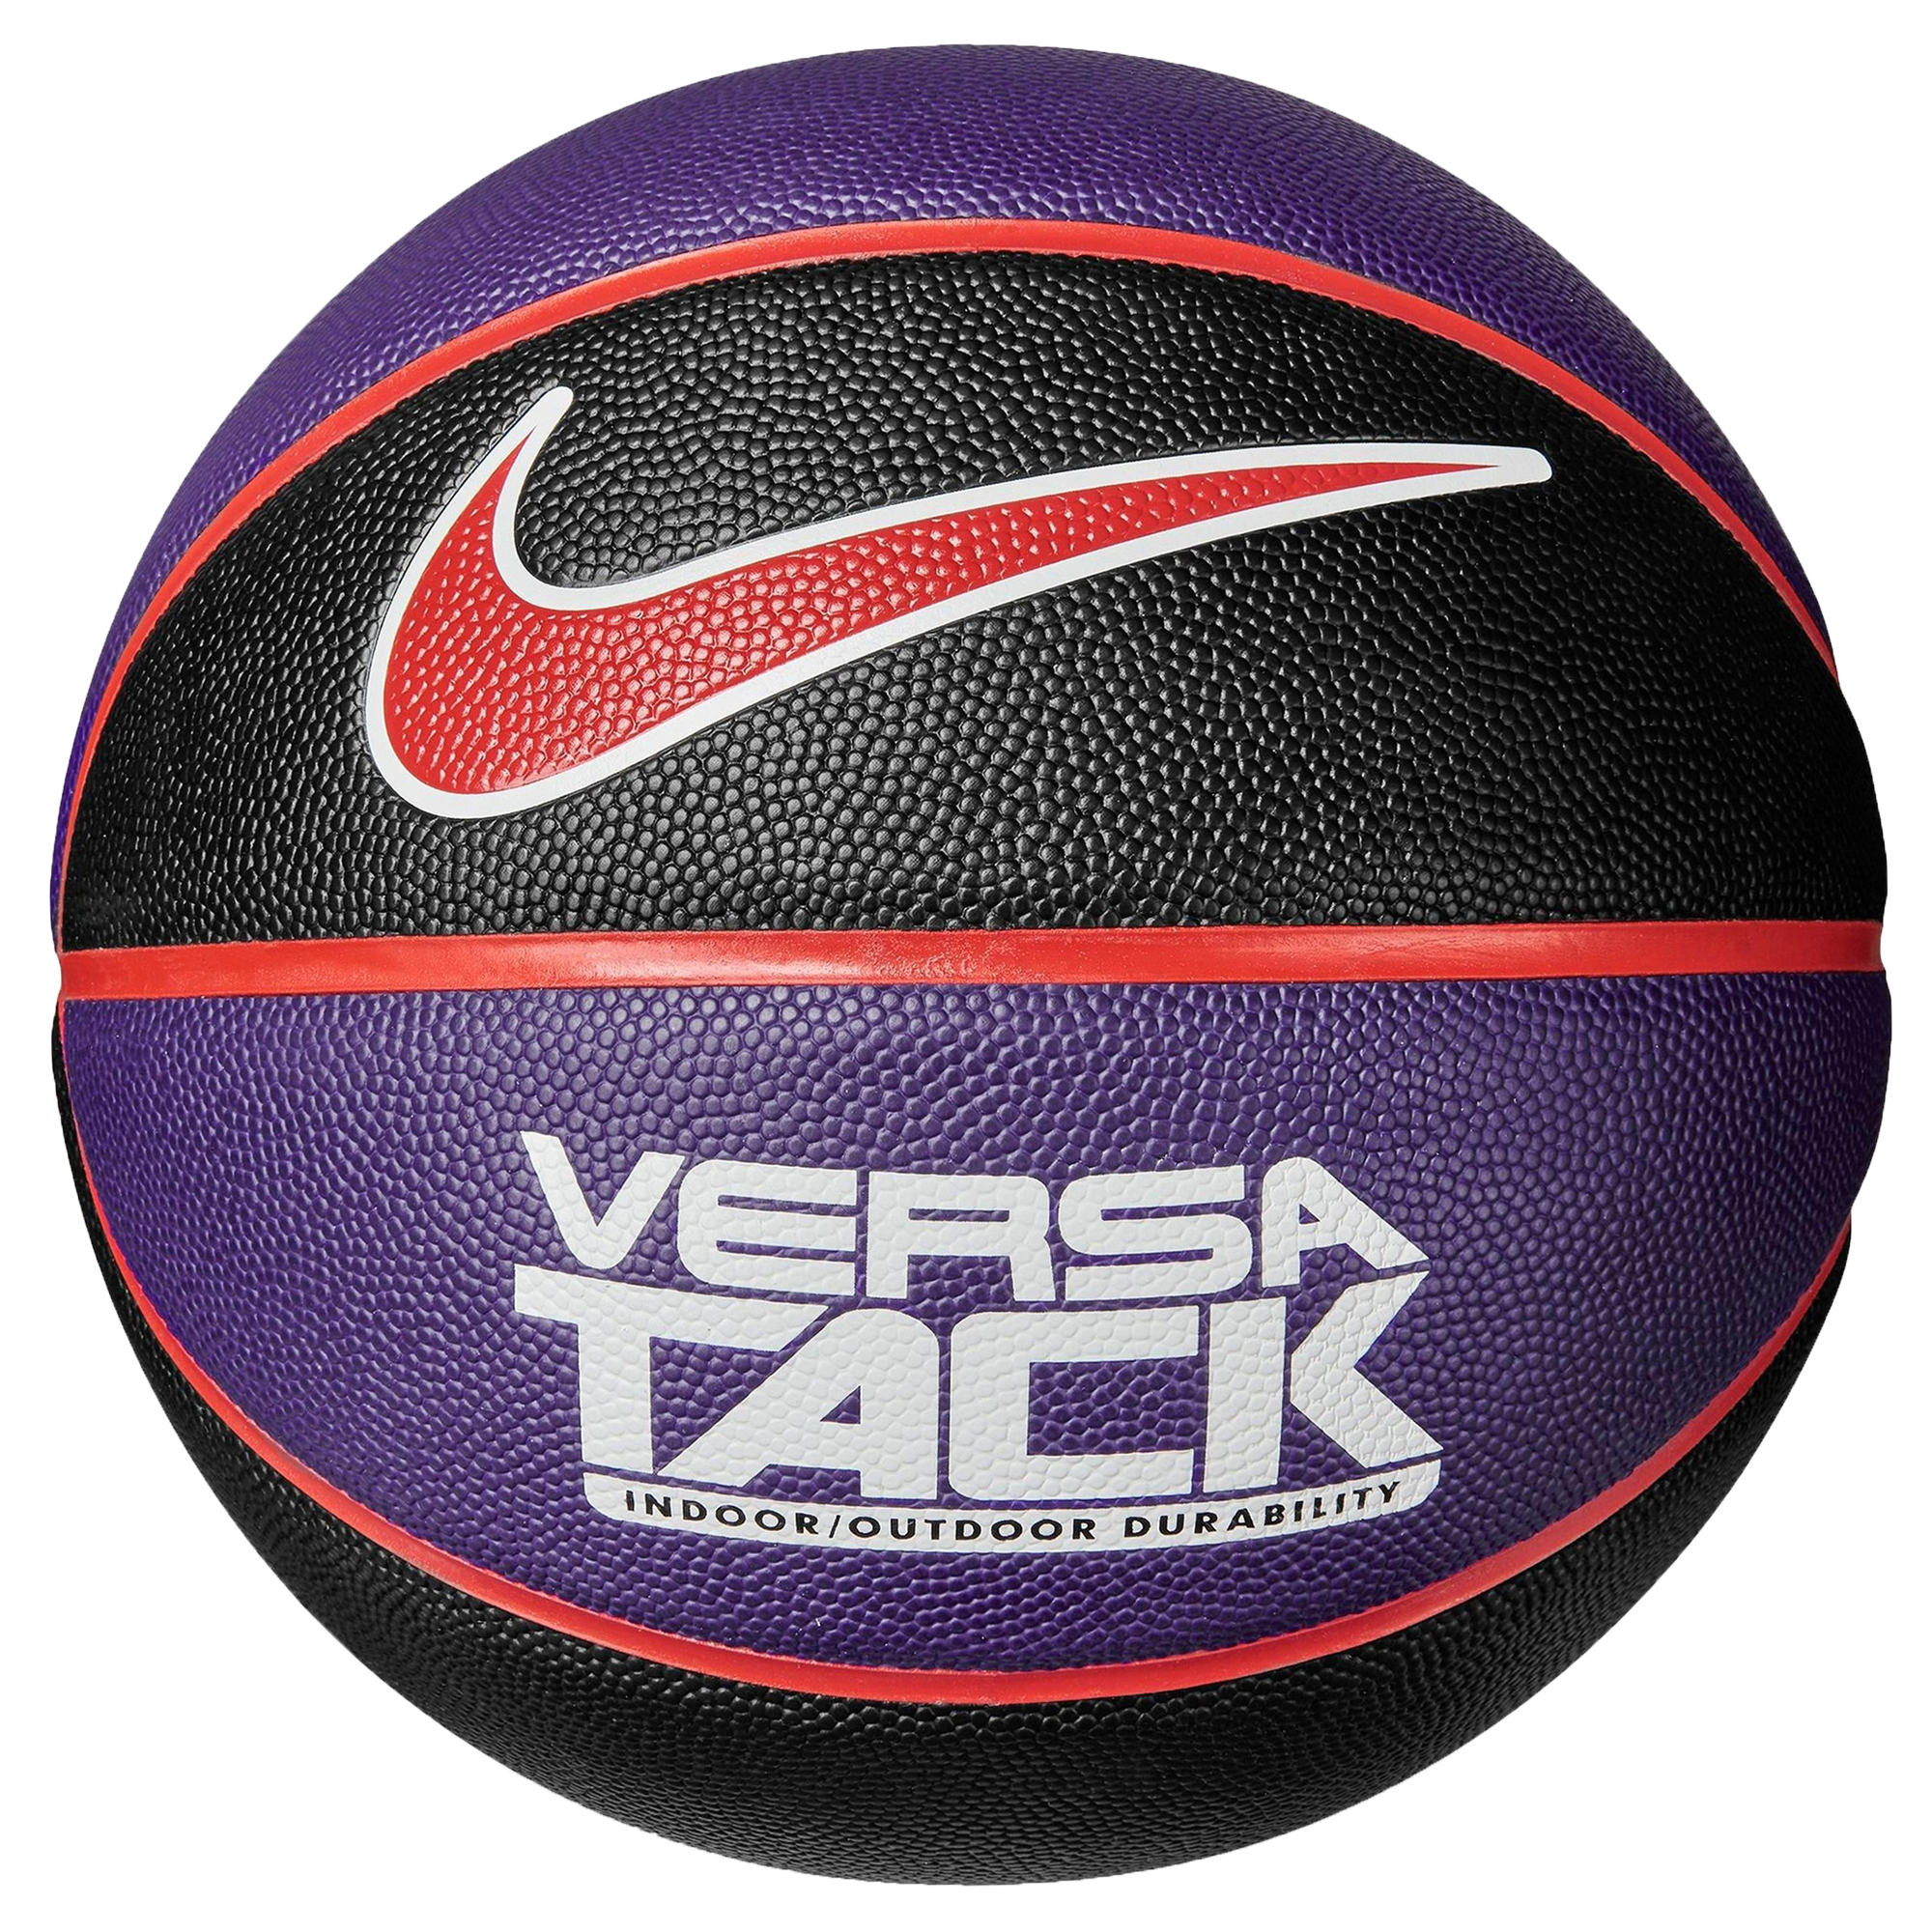 Ballon de basketball Nike Versa Tack 8P